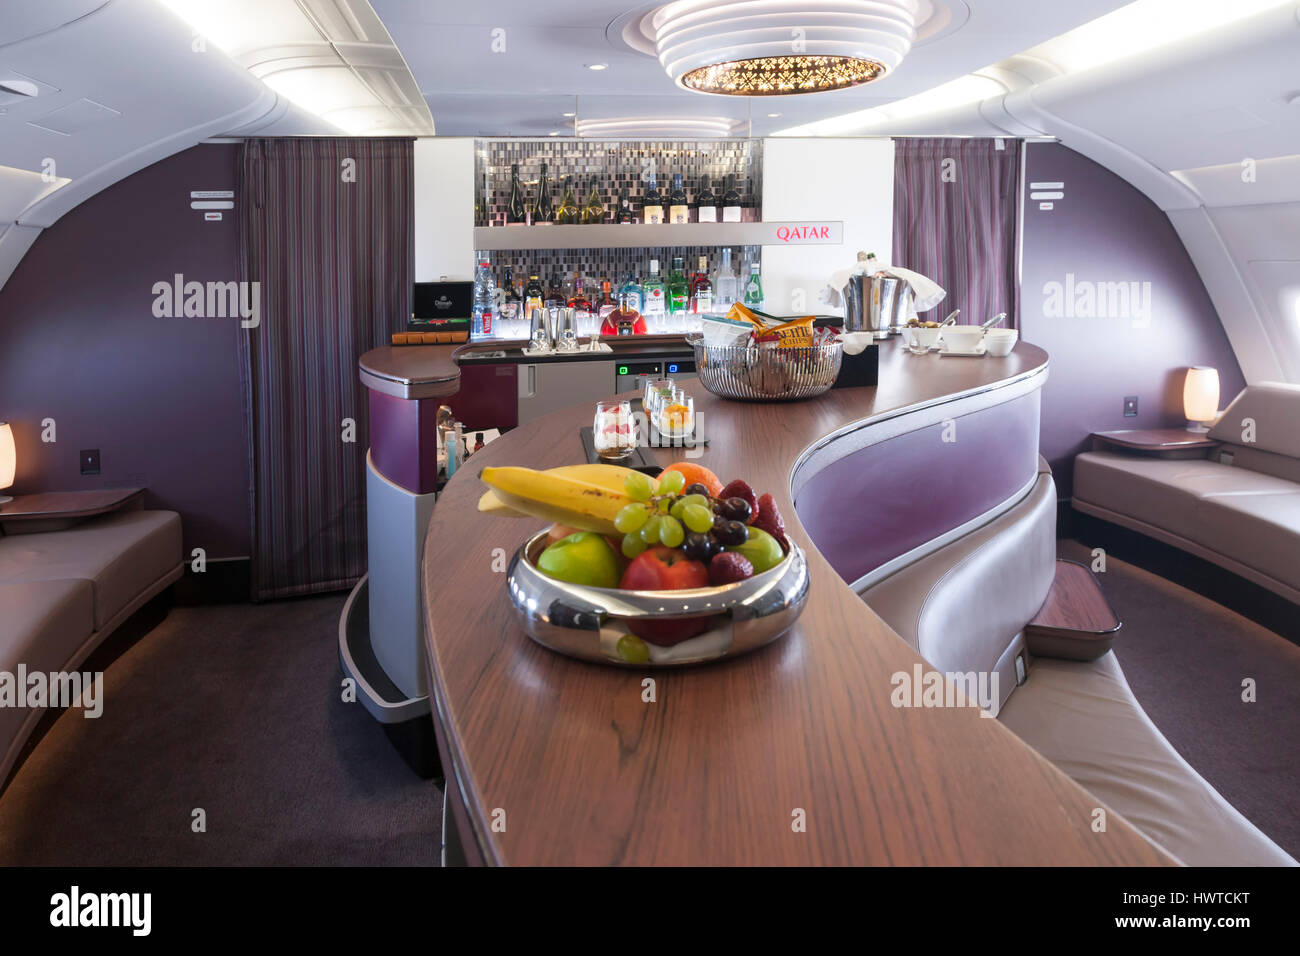 Qatar Airways Businessclass Lounge An Bord Airbus A380 800